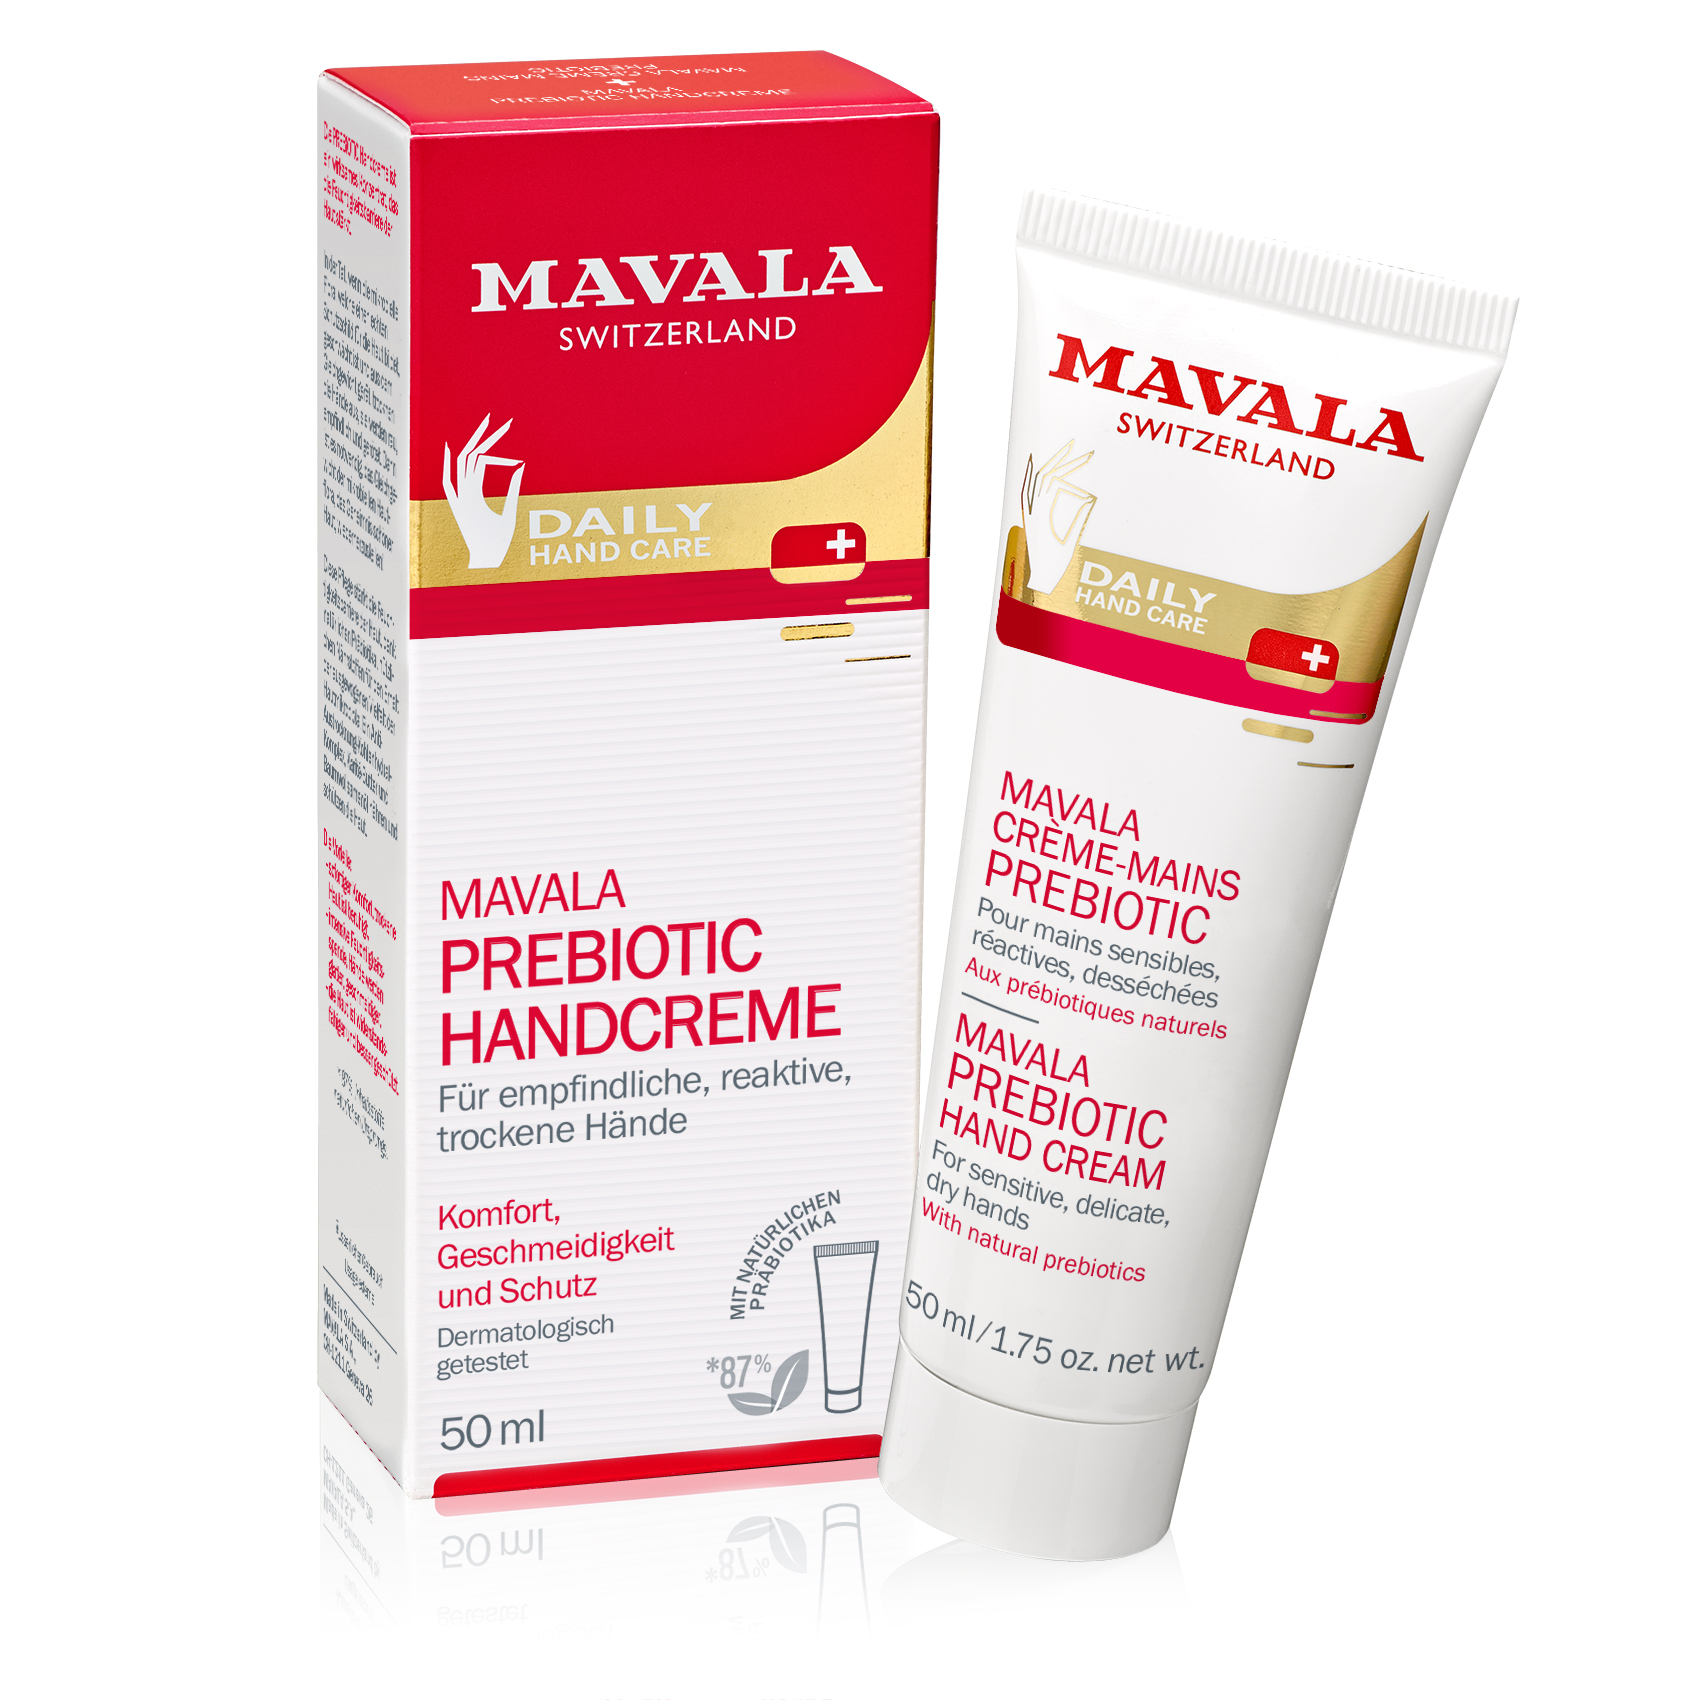 MAVALA Prebiotic Handcreme - Das wirksame Konzentrat für eine gestärkte Hautbarriere